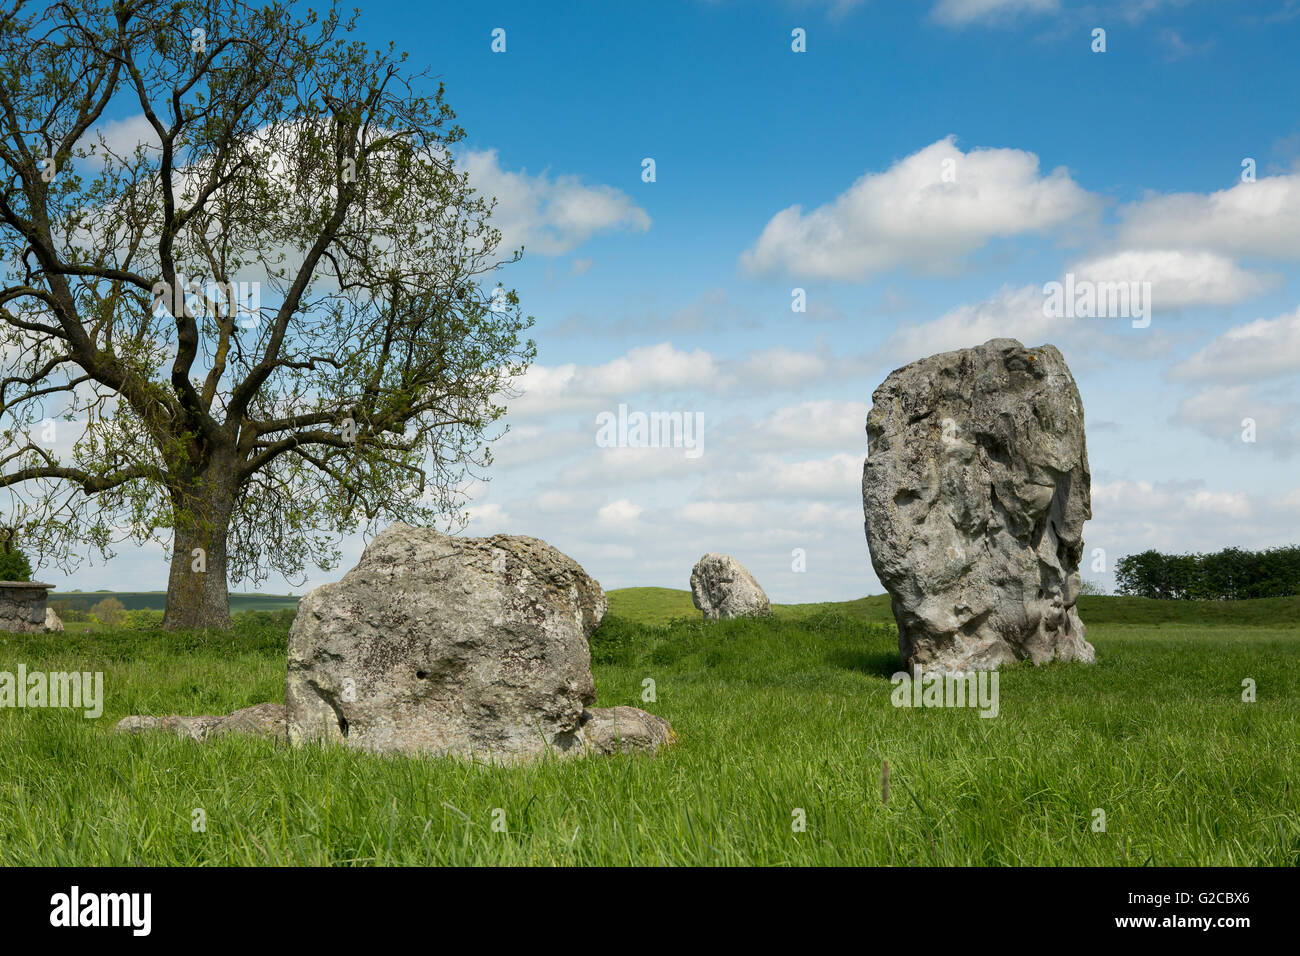 Ein paar Menhire, Teil der riesigen Steinkreis in Avebury Wiltshire. Blauer Himmel mit flauschigen Wolken und üppigen grünen Rasen. Stockfoto